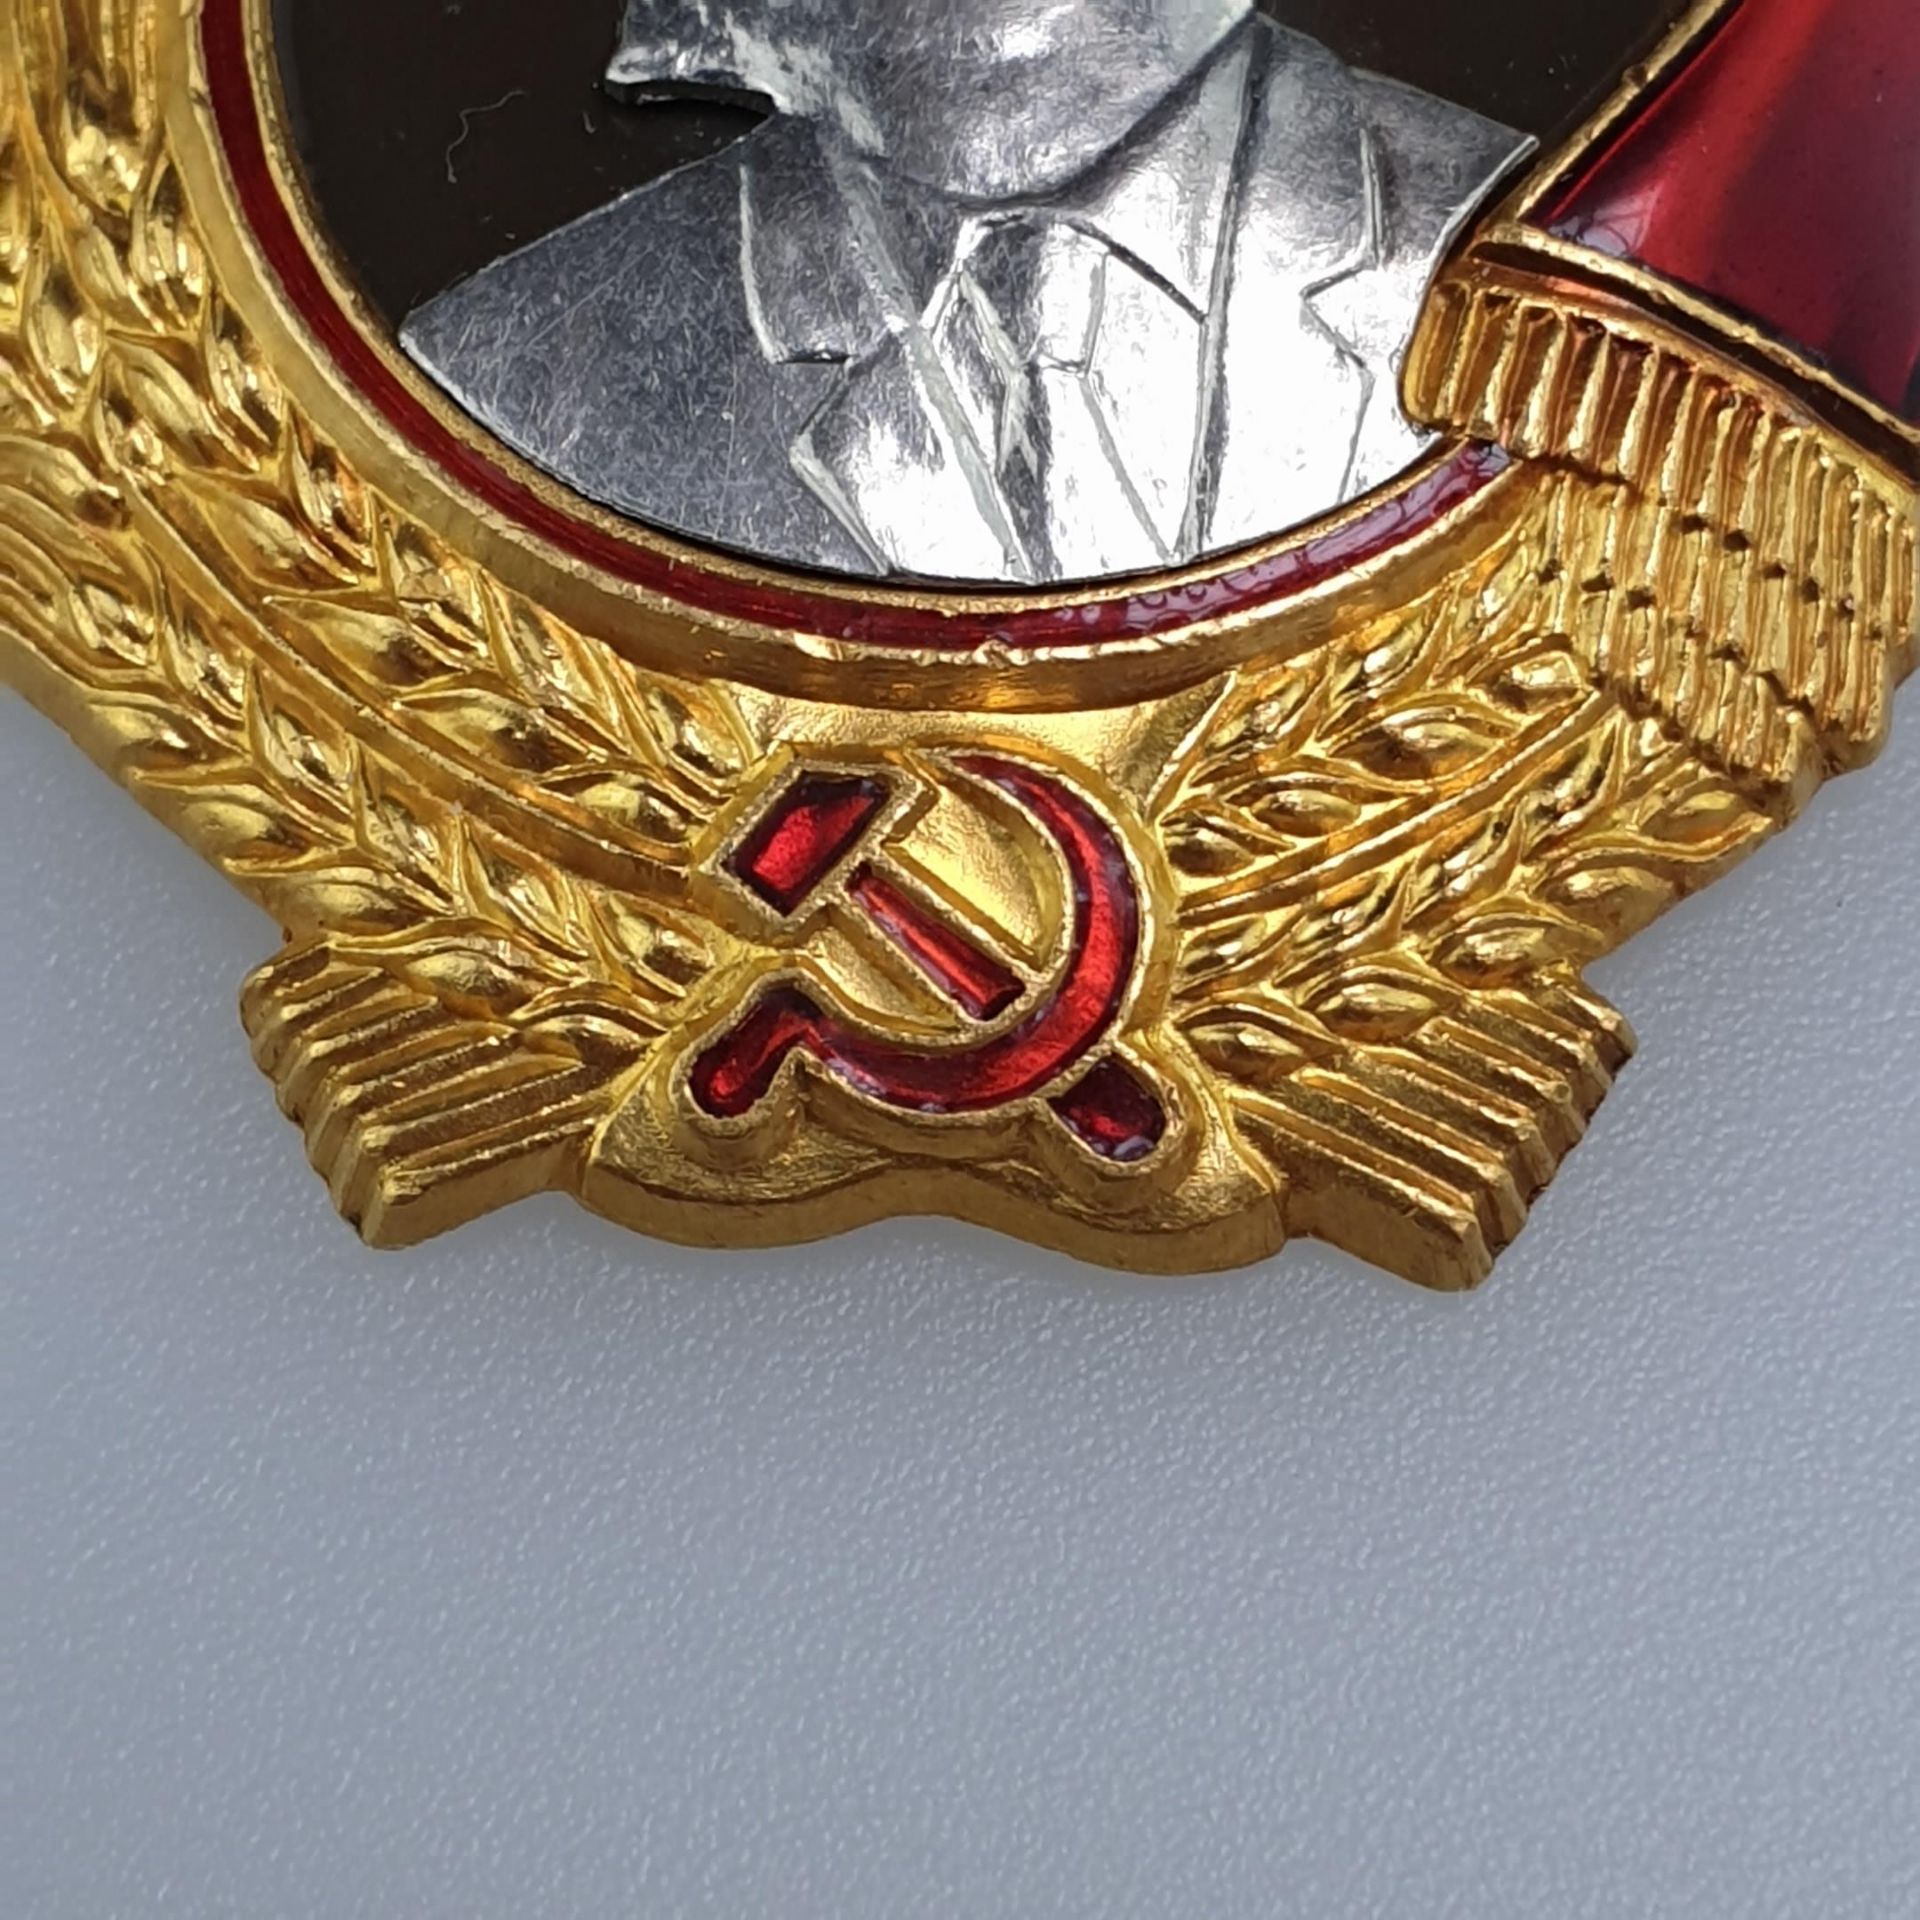 Sowjetischer Lenin-Orden - 5.Typ, Variante 1, nach 1950, Hersteller Münzenhof UdSSR, Gold und - Bild 3 aus 8